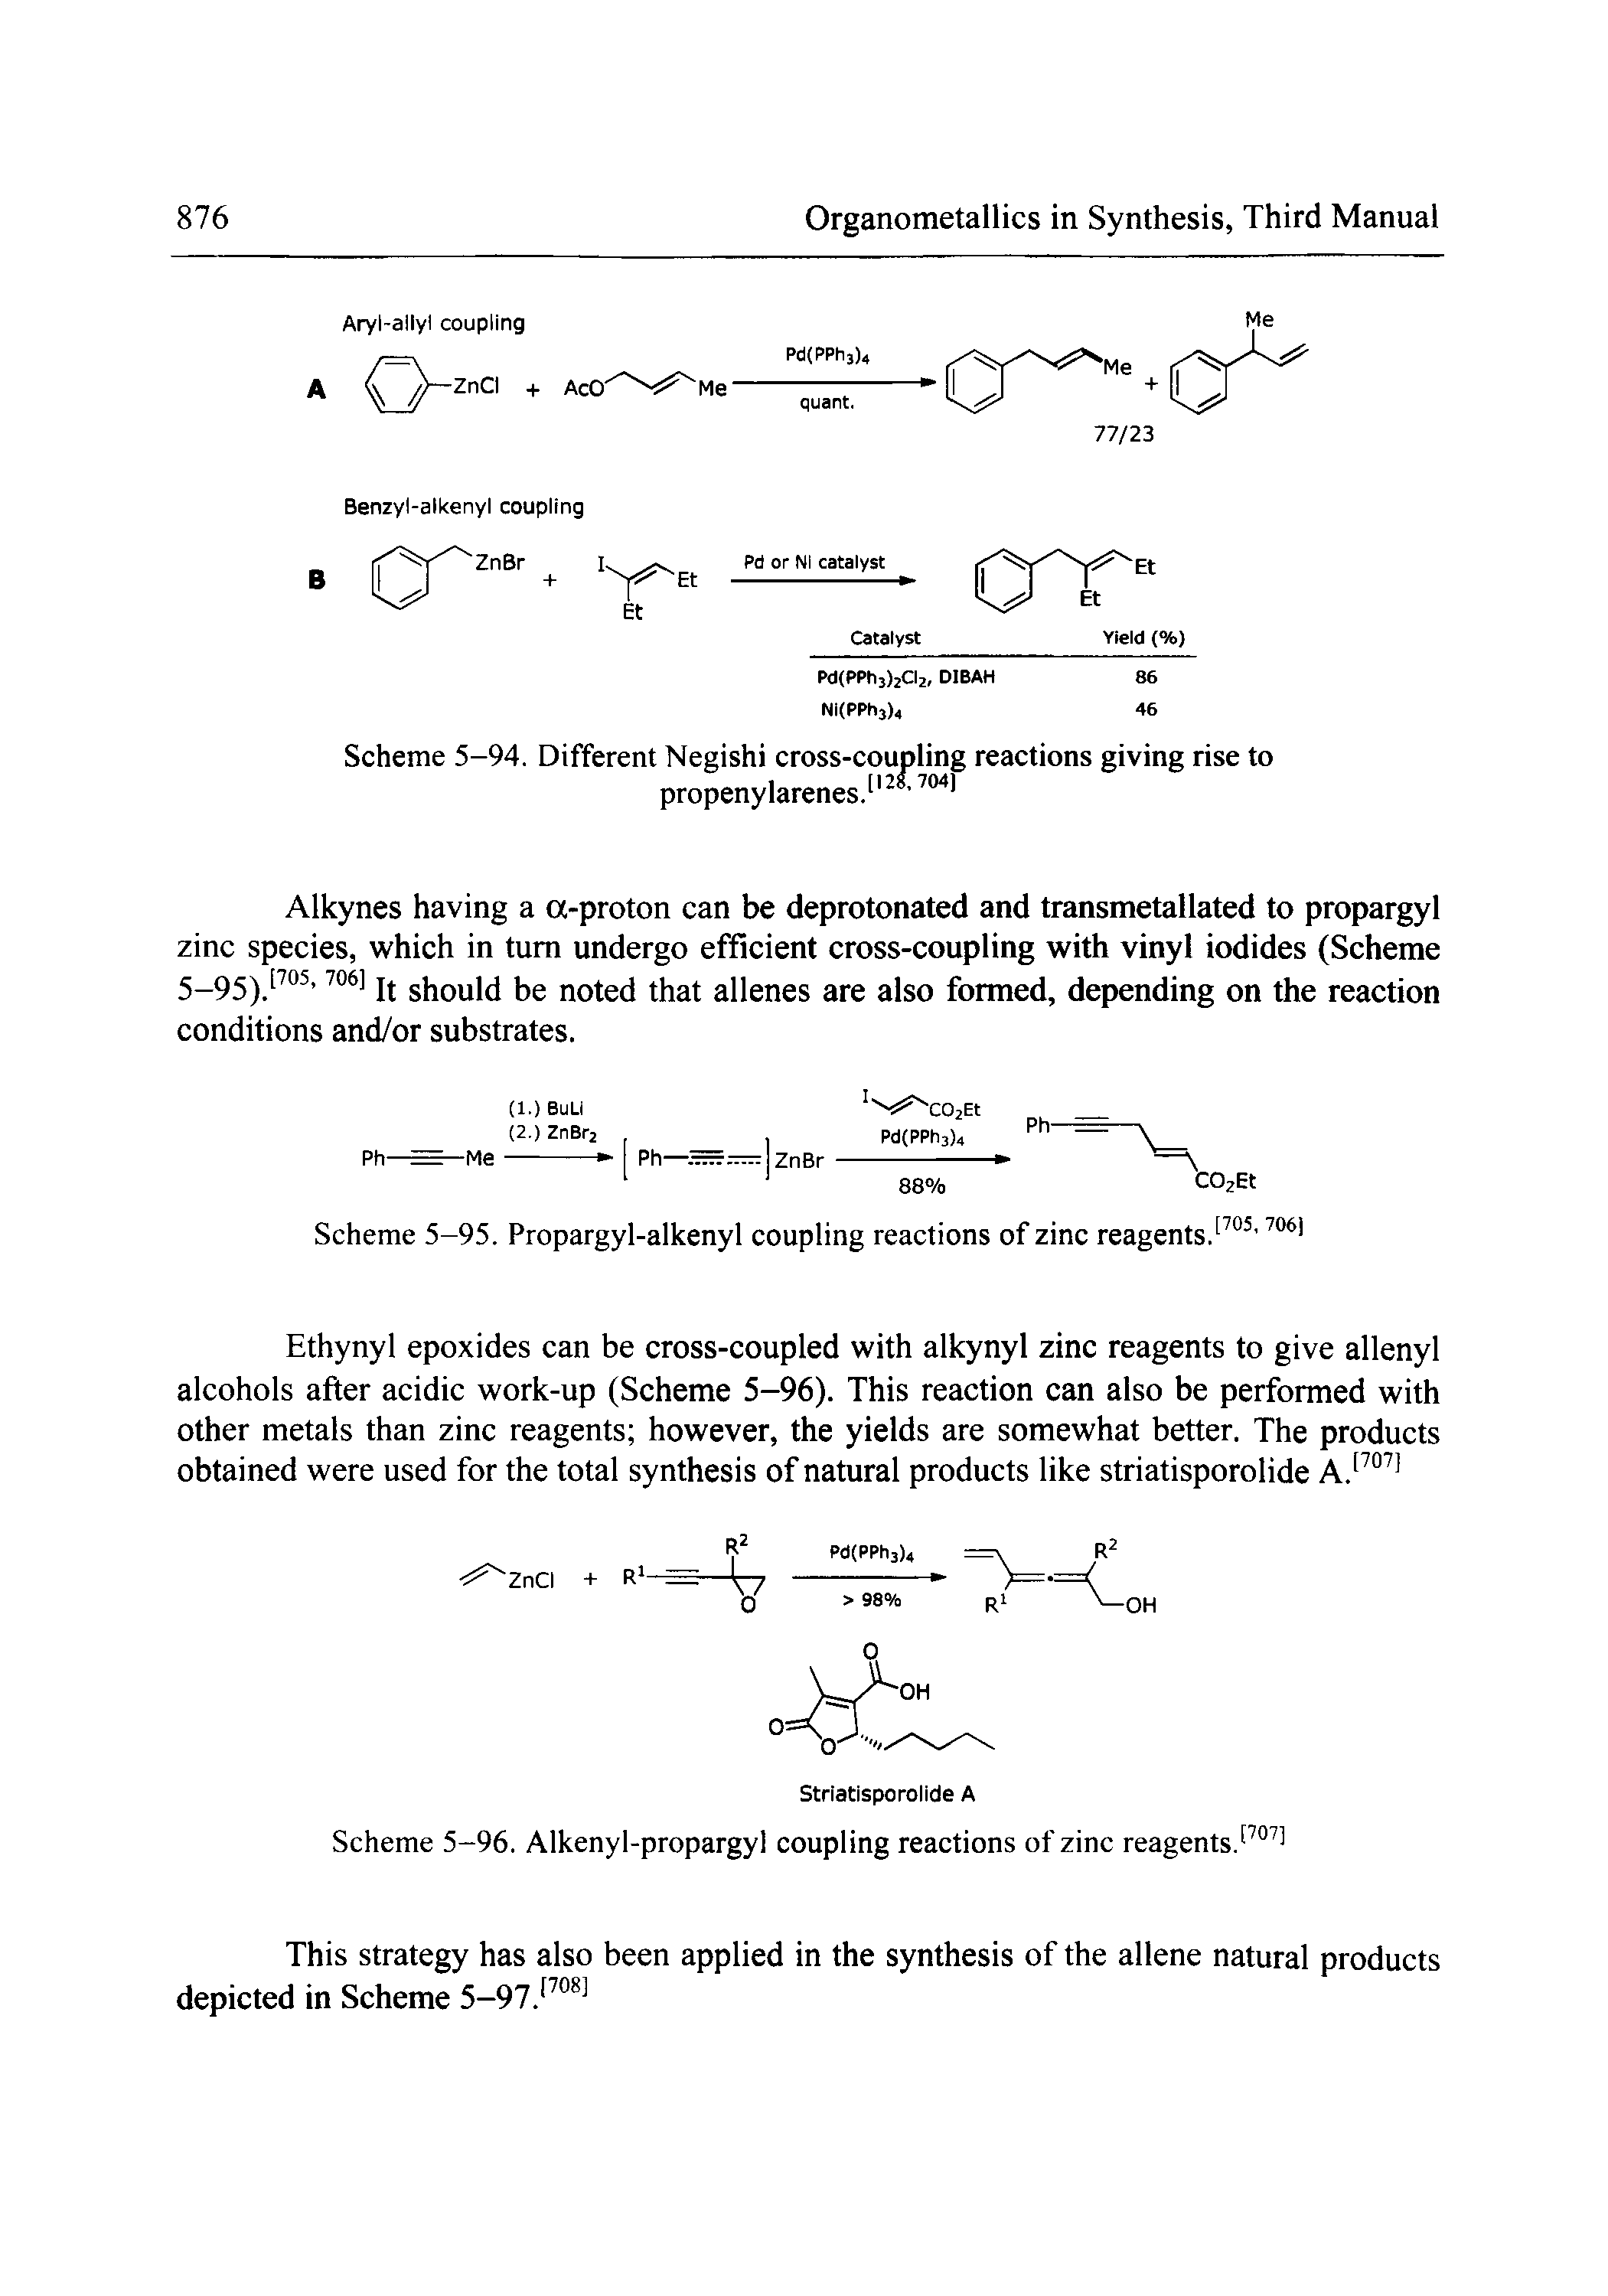 Scheme 5-96. Alkenyl-propargyl coupling reactions of zinc reagents. ...